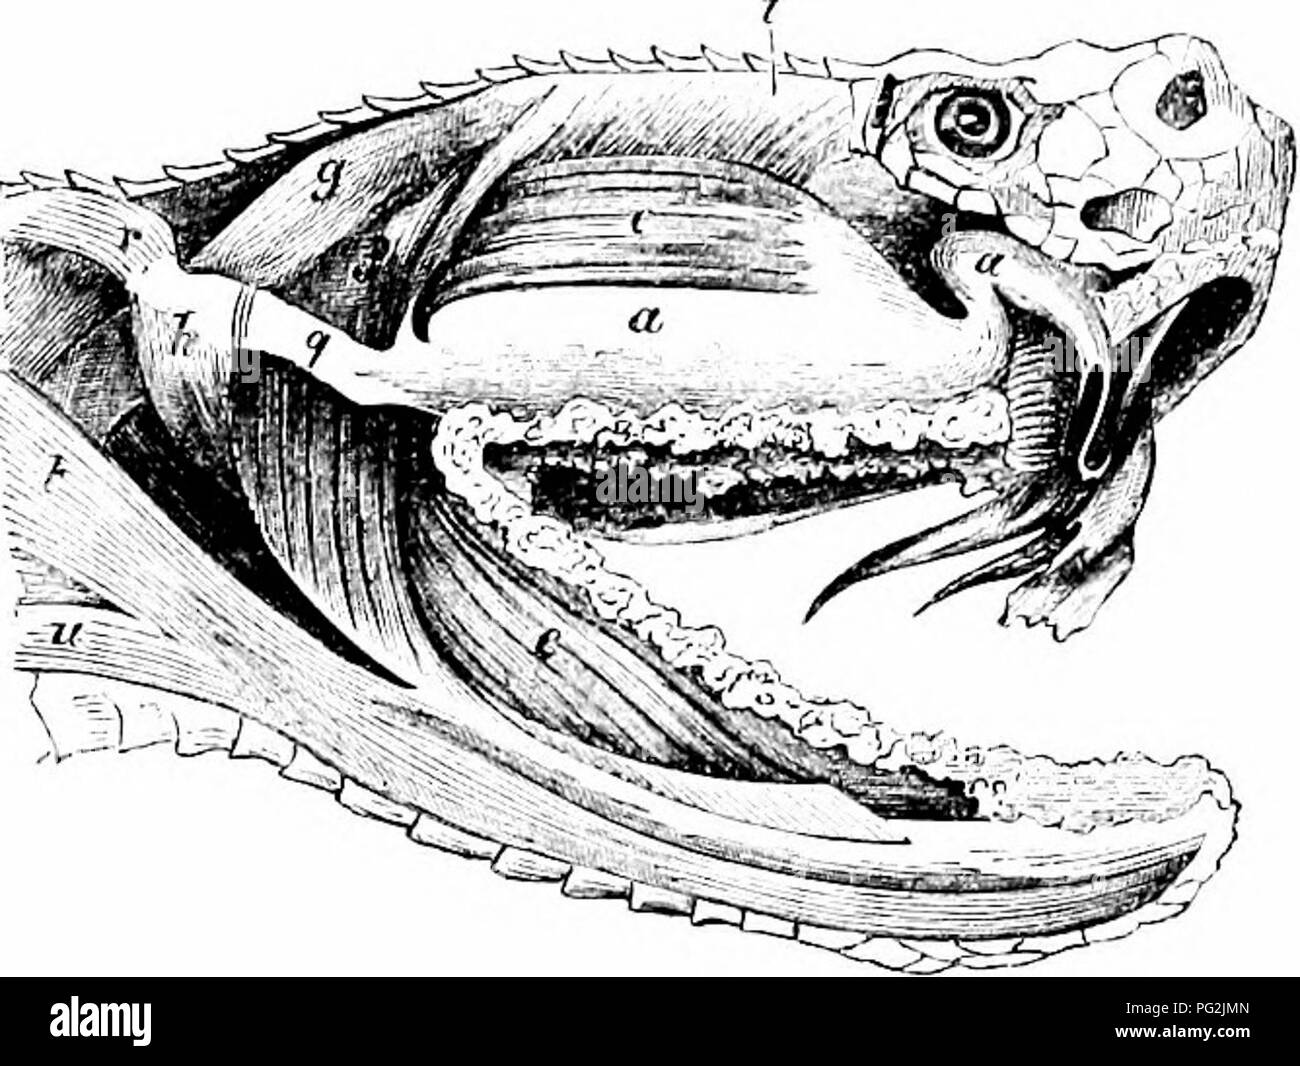 Auf der Anatomie der Wirbeltiere. Wirbeltiere; Anatomie, Vergleichende;  1866. MYOLOGY oder Reptilien. 227 pents: Der lange im Ohr Knochen, Abb. 97,  28, ist durch seine Extremität ironi, der herausragenden Mastoid, und